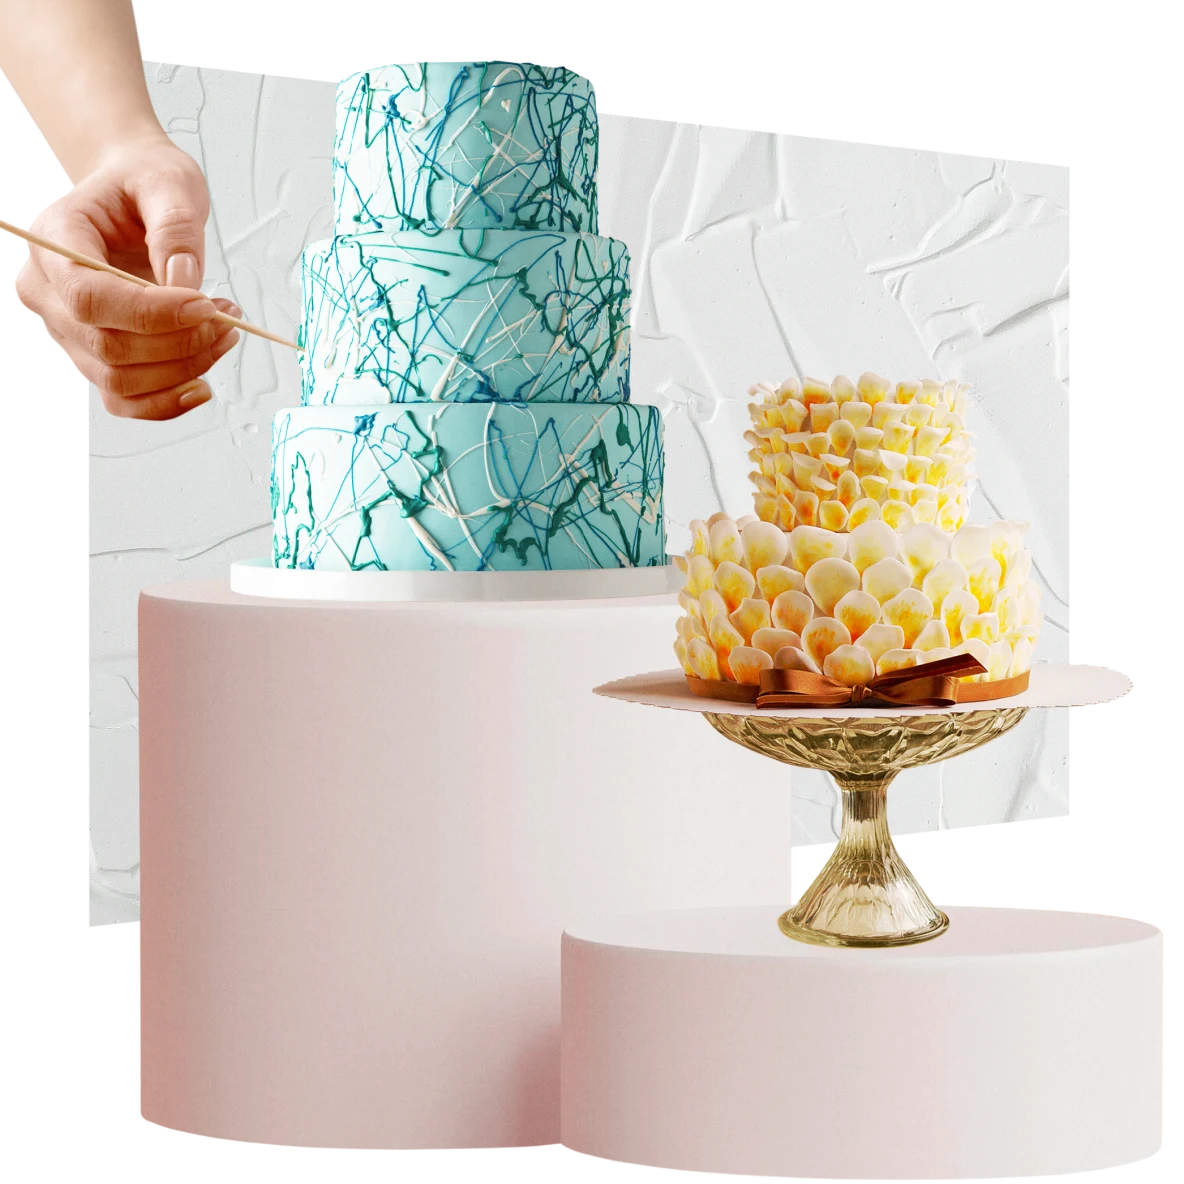 Hellblauer dreistöckiger Kuchen links, rechts ein kleinerer gelb-weißer zweistöckiger Kuchen. Eine Hand bringt am Kuchen links Verzierungen an. Im Hintergrund weiße Zuckerglasur.